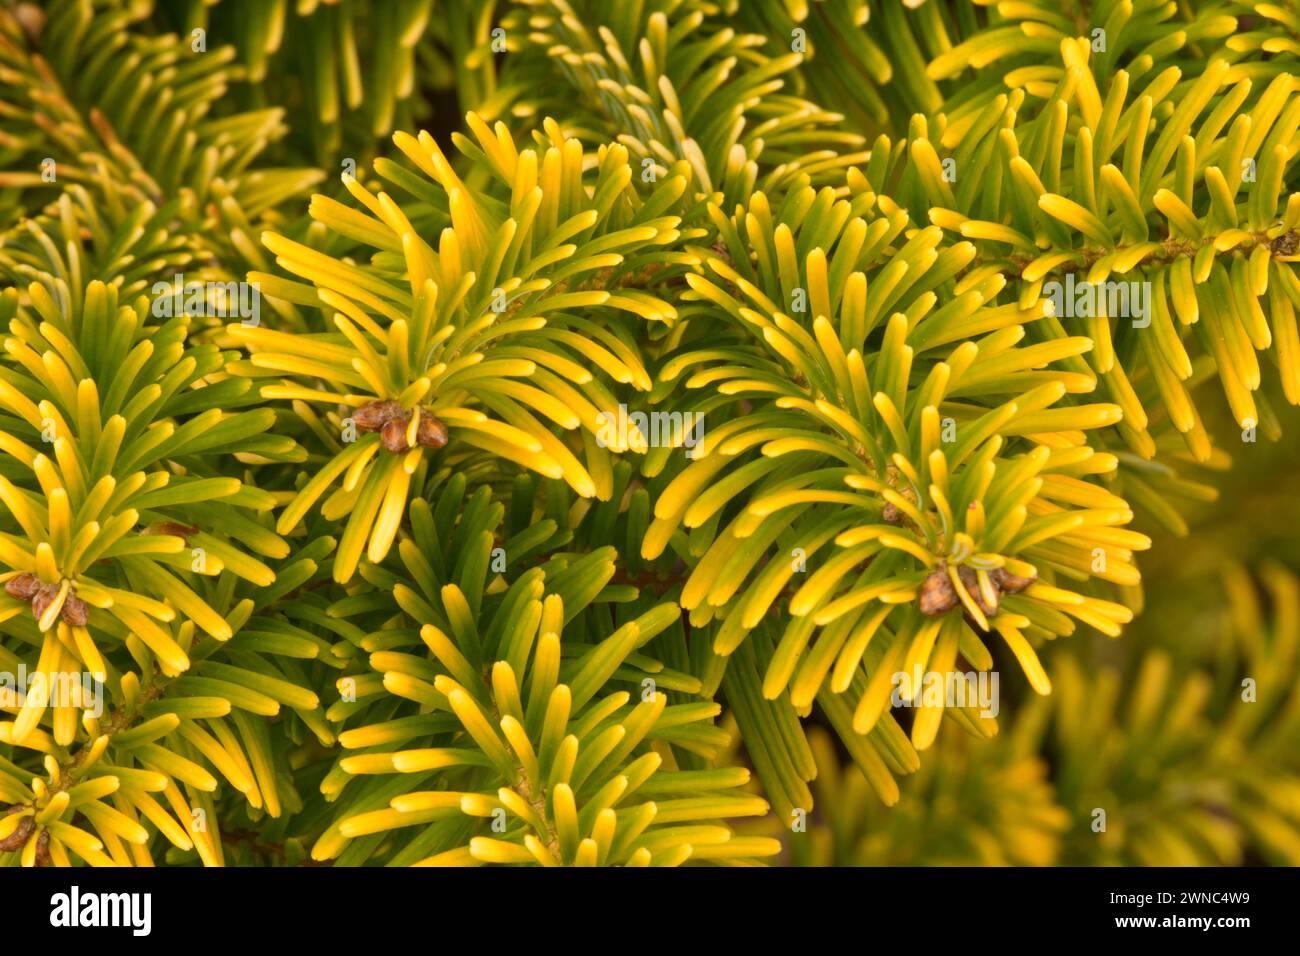 Nordmann fir (Abies nordmanniana), Oregon Garden, Silverton, Oregon Stock Photo